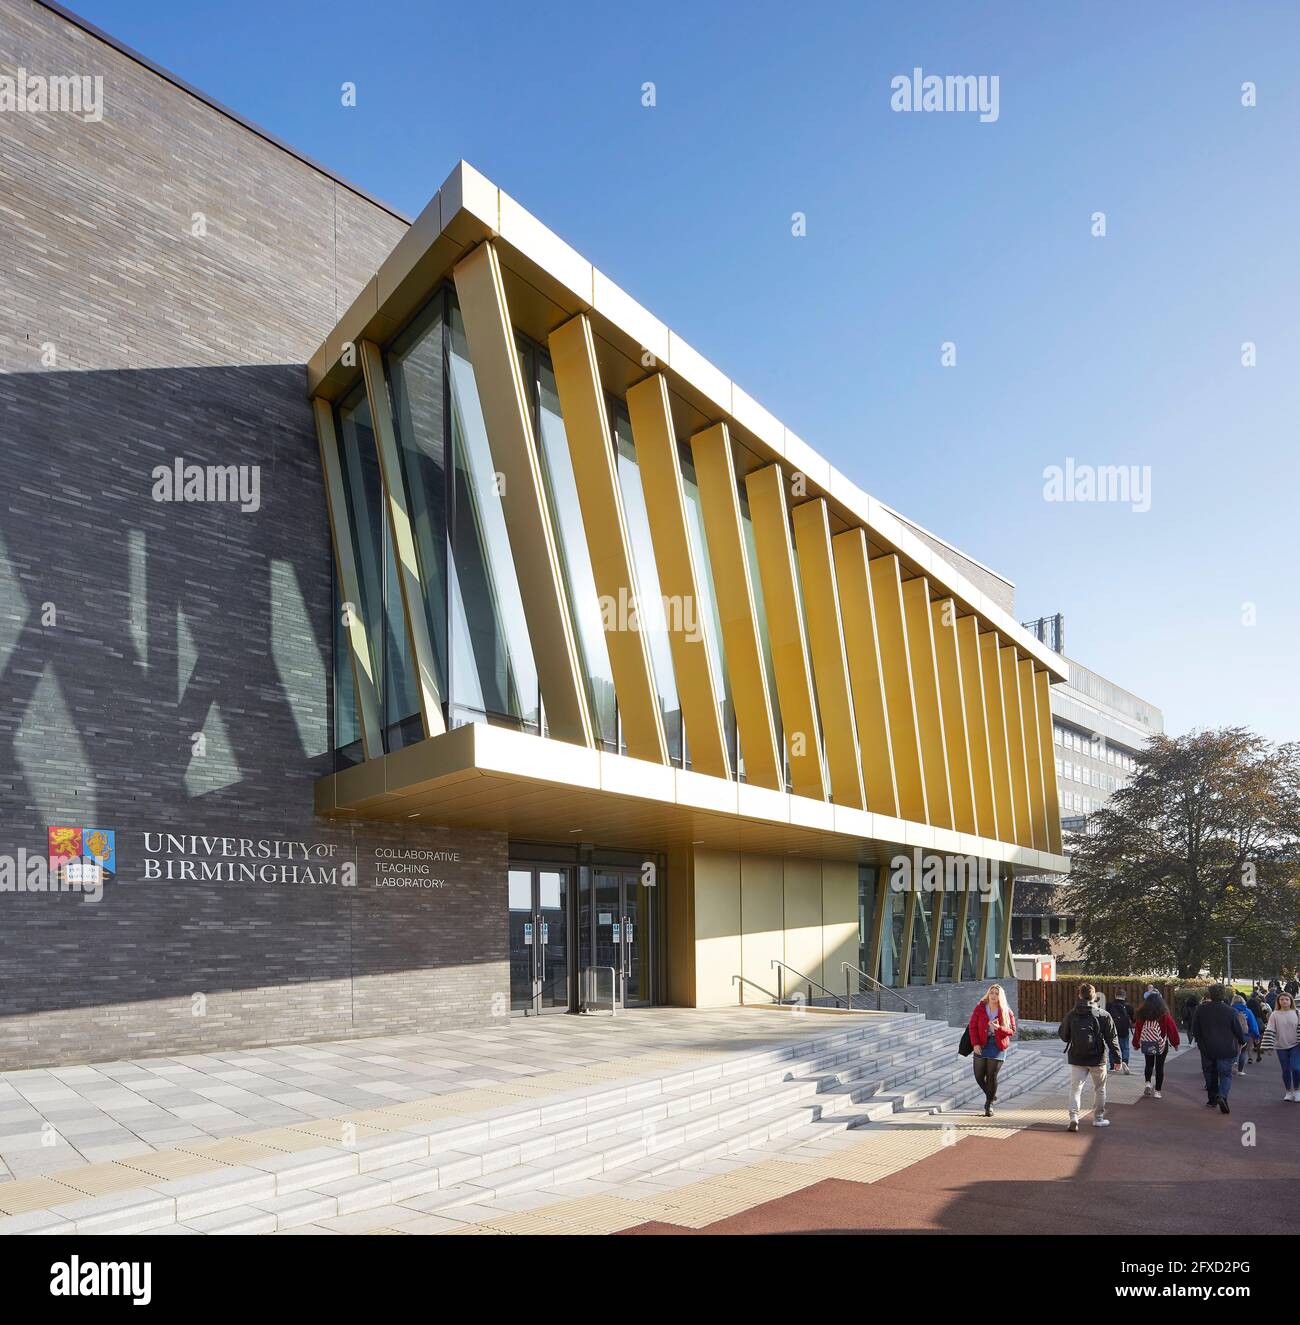 Zufahrt und Haupteingang mit Beschilderung. University of Birmingham, Collaborative Teaching Laboratory, Birmingham, Großbritannien. Architekt: Sheppard Stockfoto